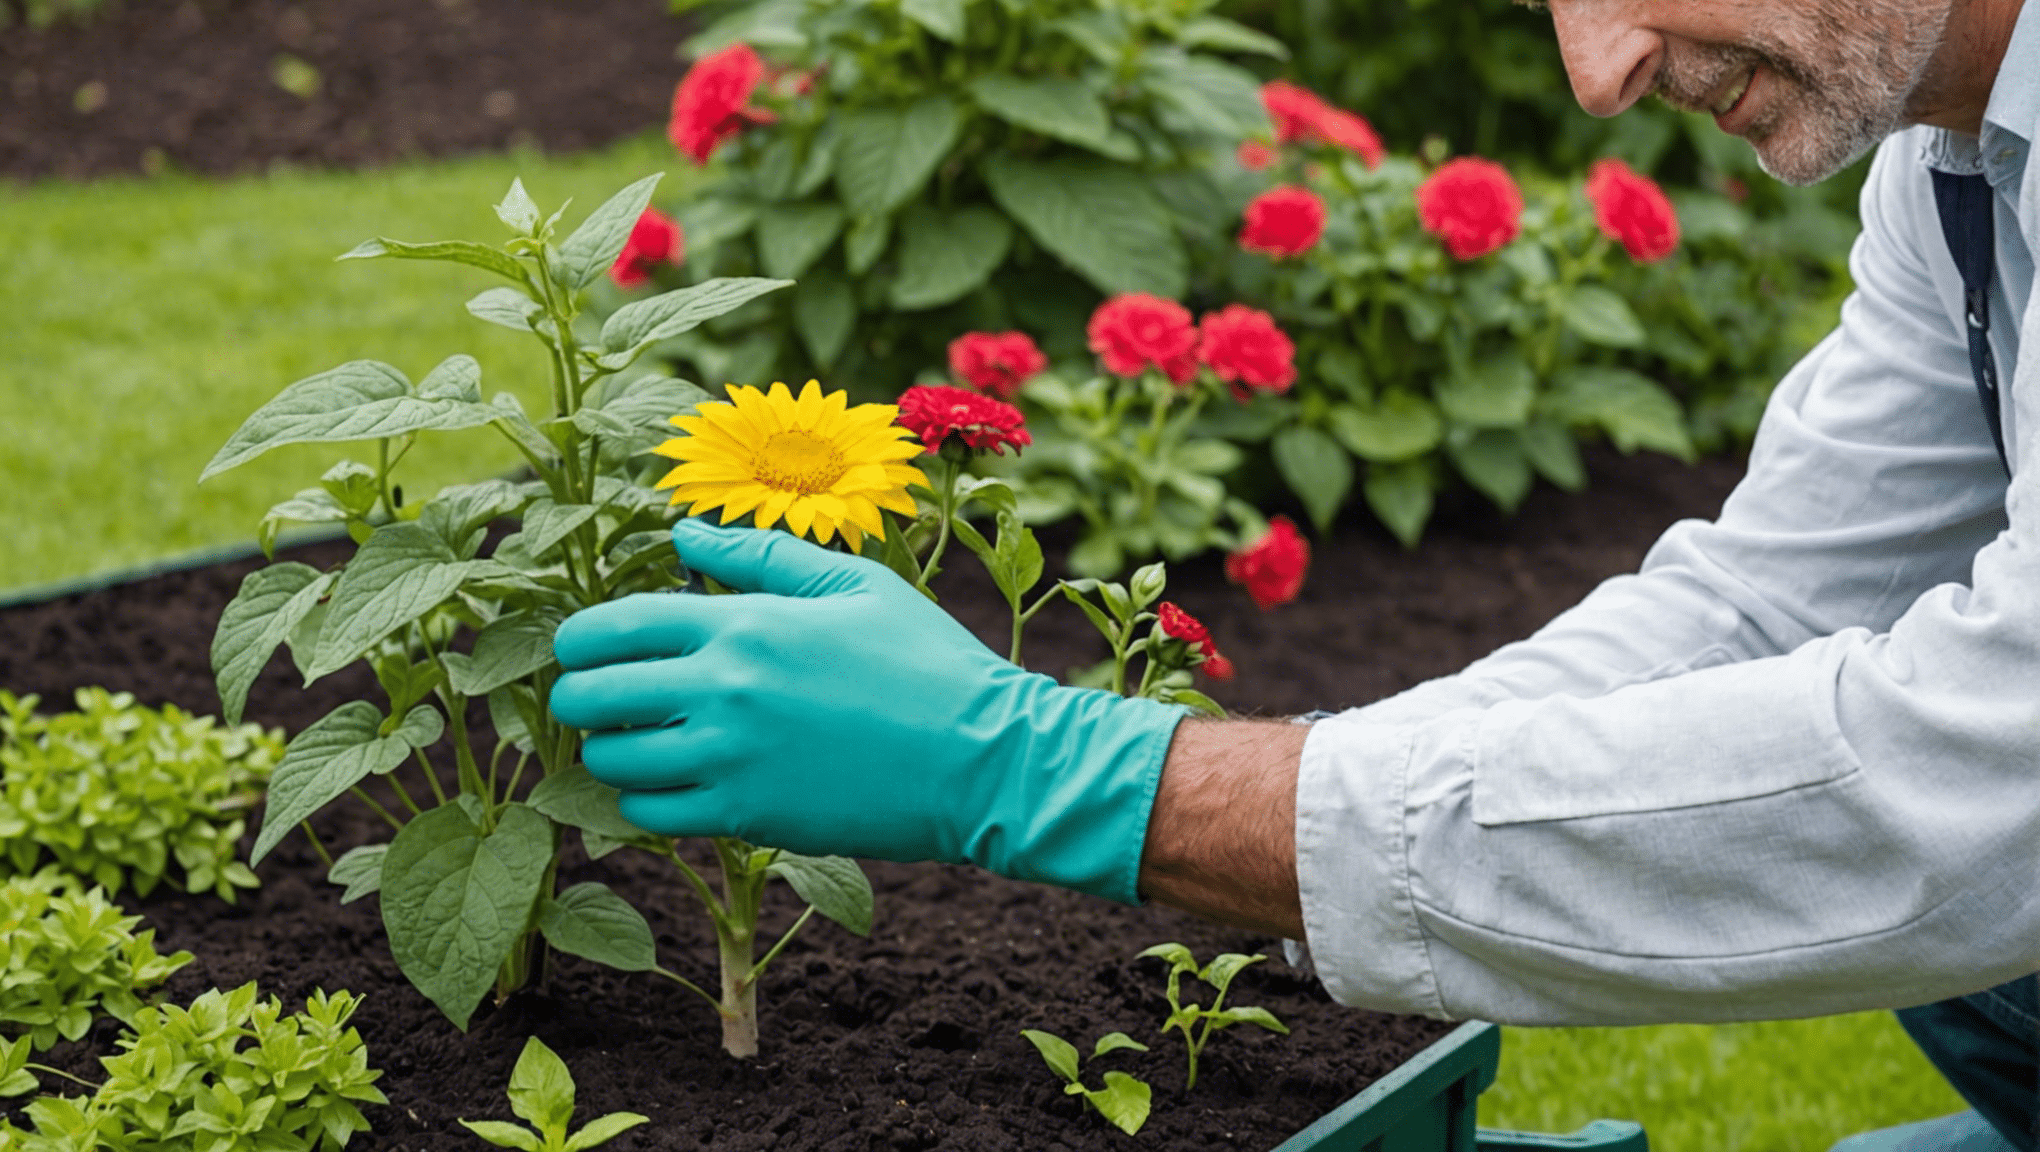 Finden Sie mit diesem umfassenden Test heraus, ob sich Gartenhüllen lohnen. Erhalten Sie Einblicke in die Vor- und Nachteile, um eine fundierte Entscheidung treffen zu können.